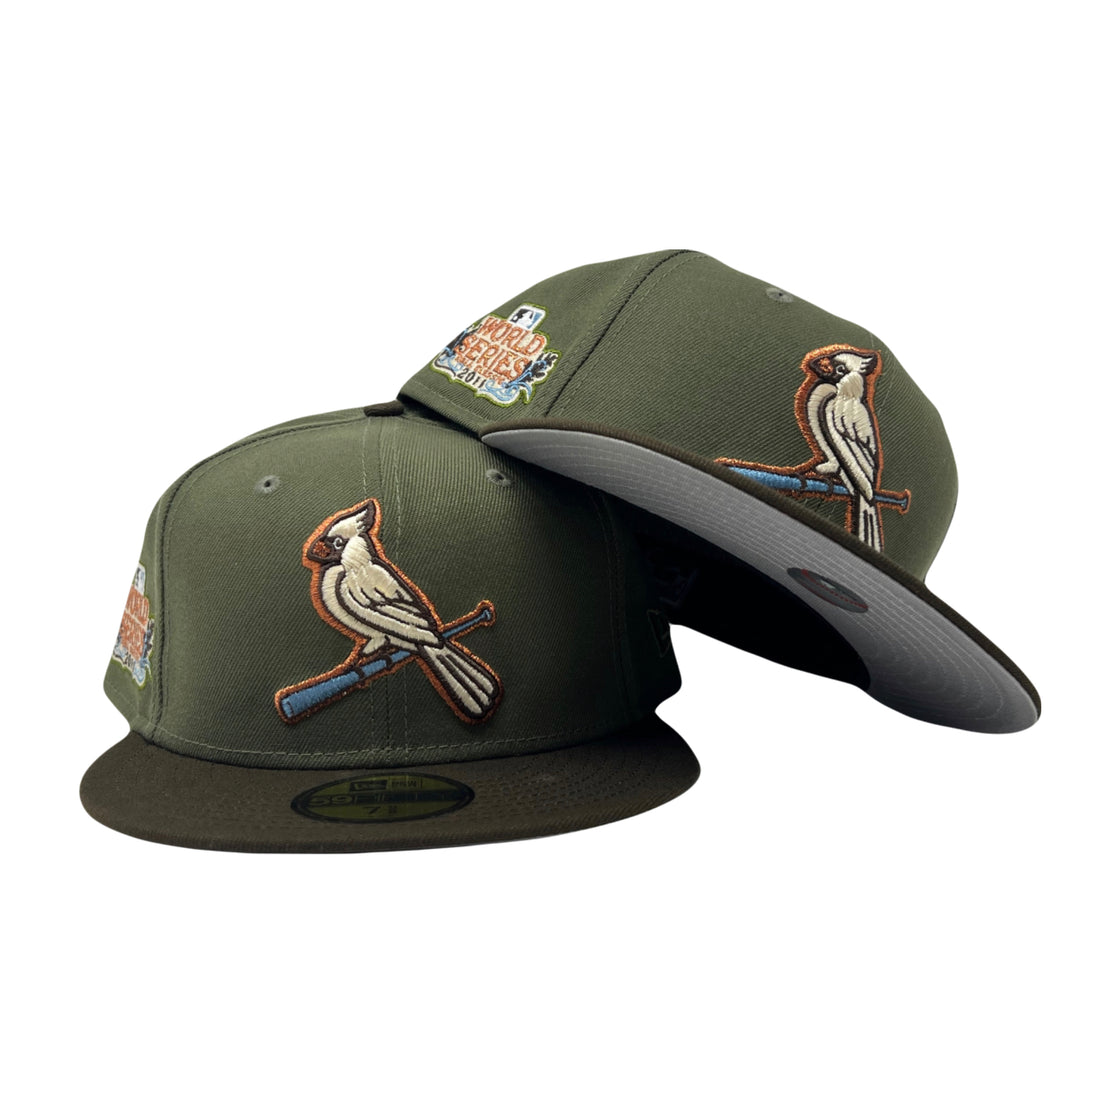 St. Louis Cardinals 2011 World Series 5950 New Era Fitted Hat Matching Air Jordan 4 Craft